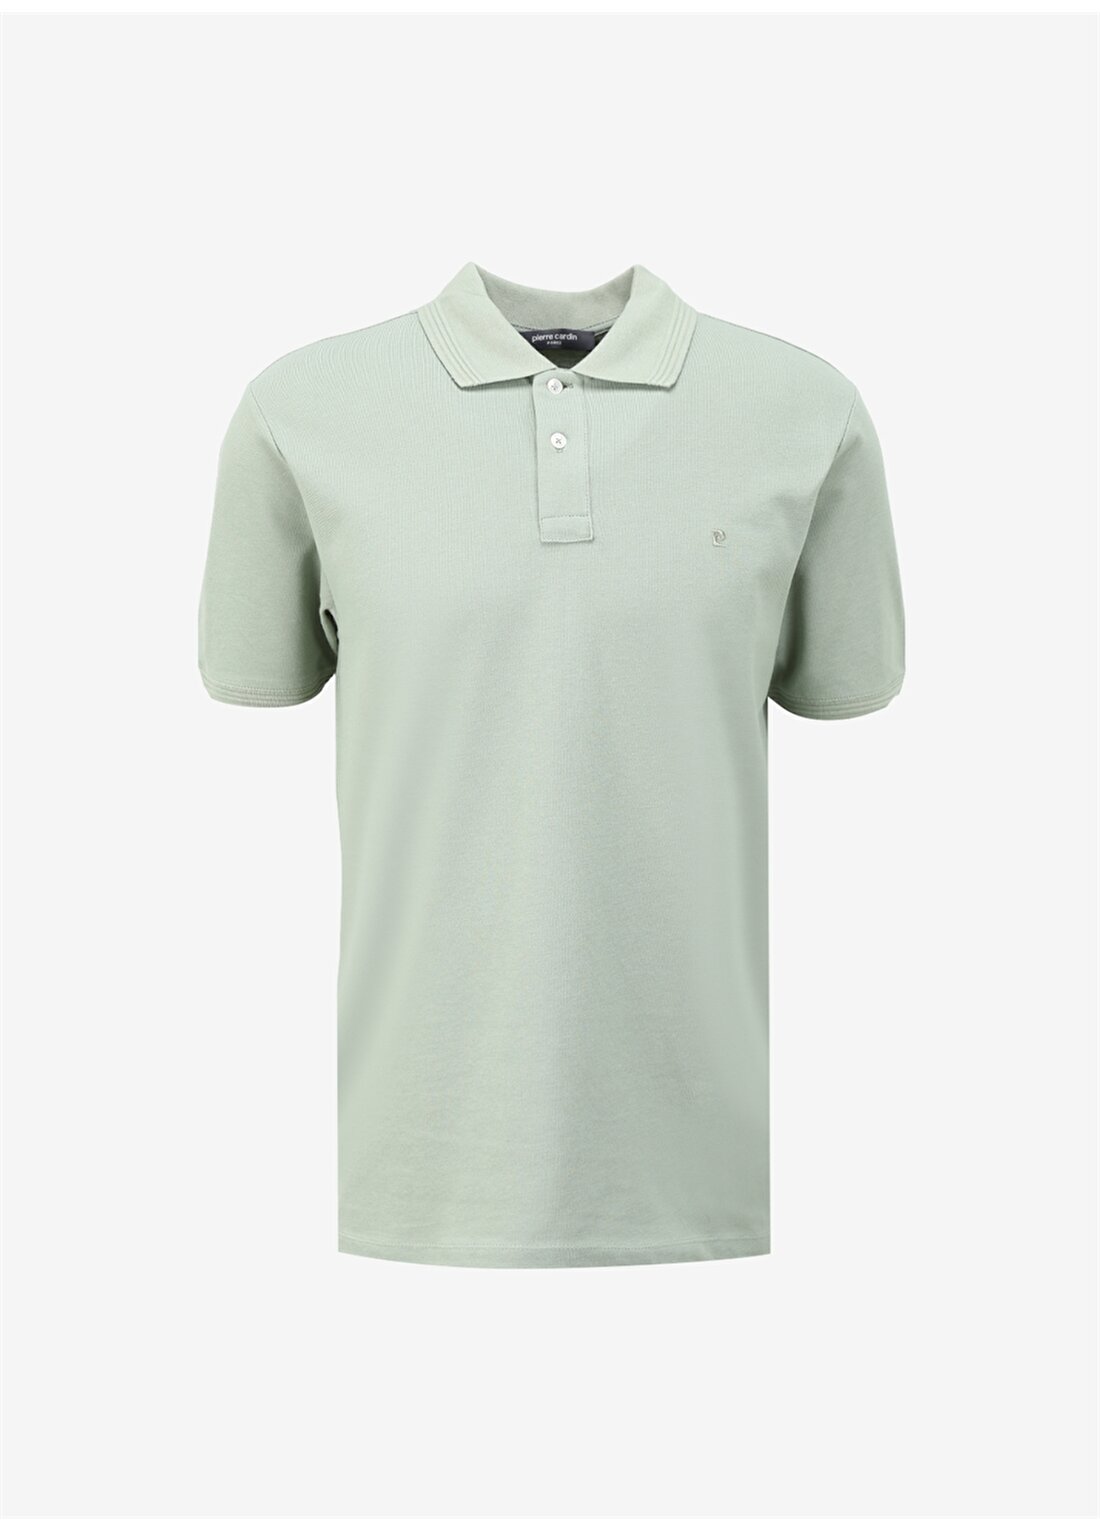 Pierre Cardin Düz Çağla Erkek Polo T-Shirt SUNNY